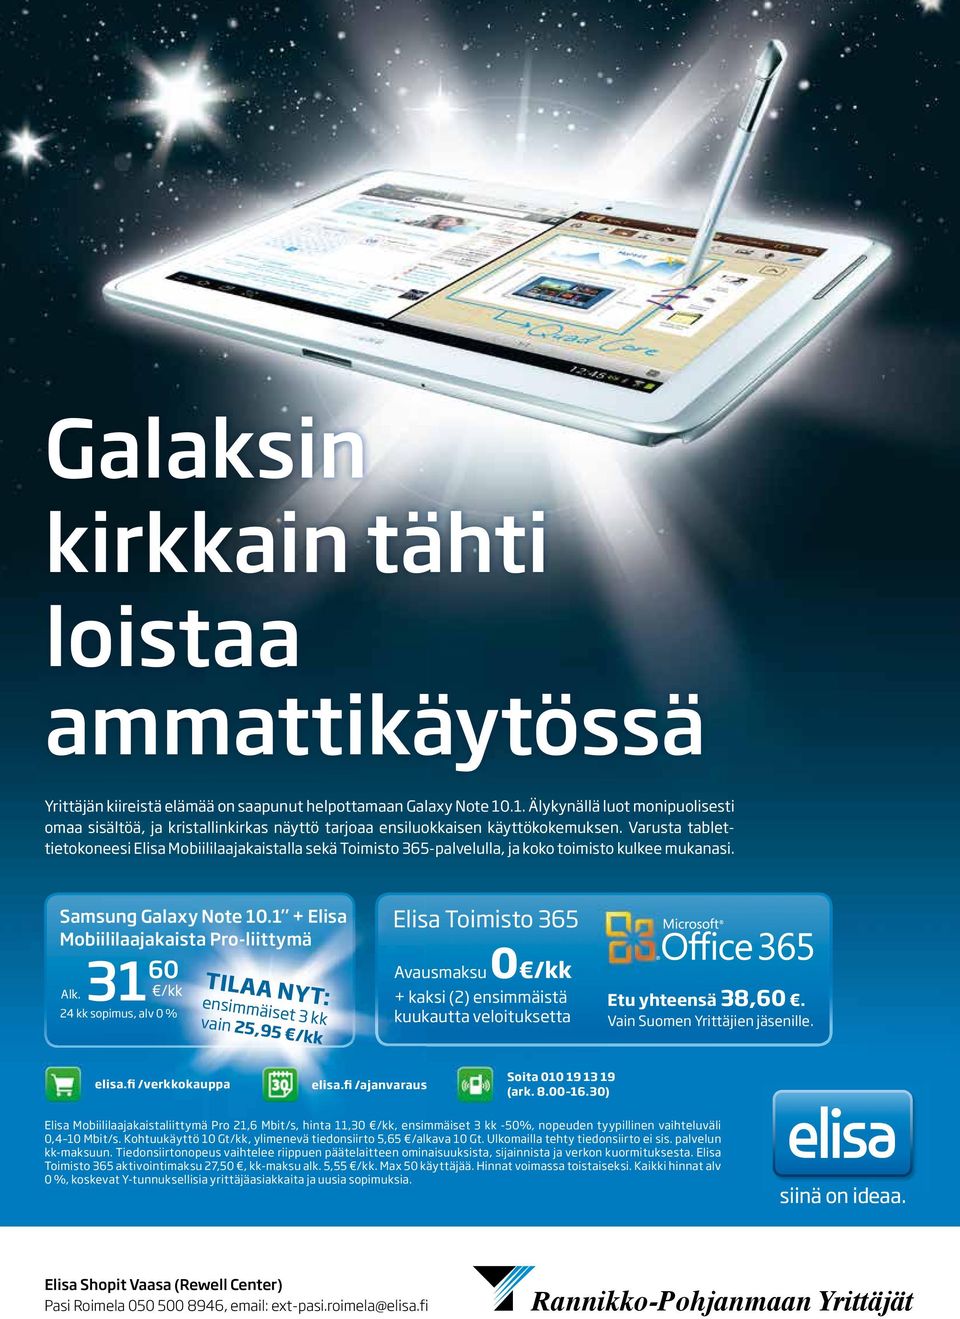 Varusta tablettietokoneesi Elisa Mobiililaajakaistalla sekä Toimisto 365-palvelulla, ja koko toimisto kulkee mukanasi. Samsung Galaxy Note 10.1 + Elisa Mobiililaajakaista Pro-liittymä 31 60 Alk.